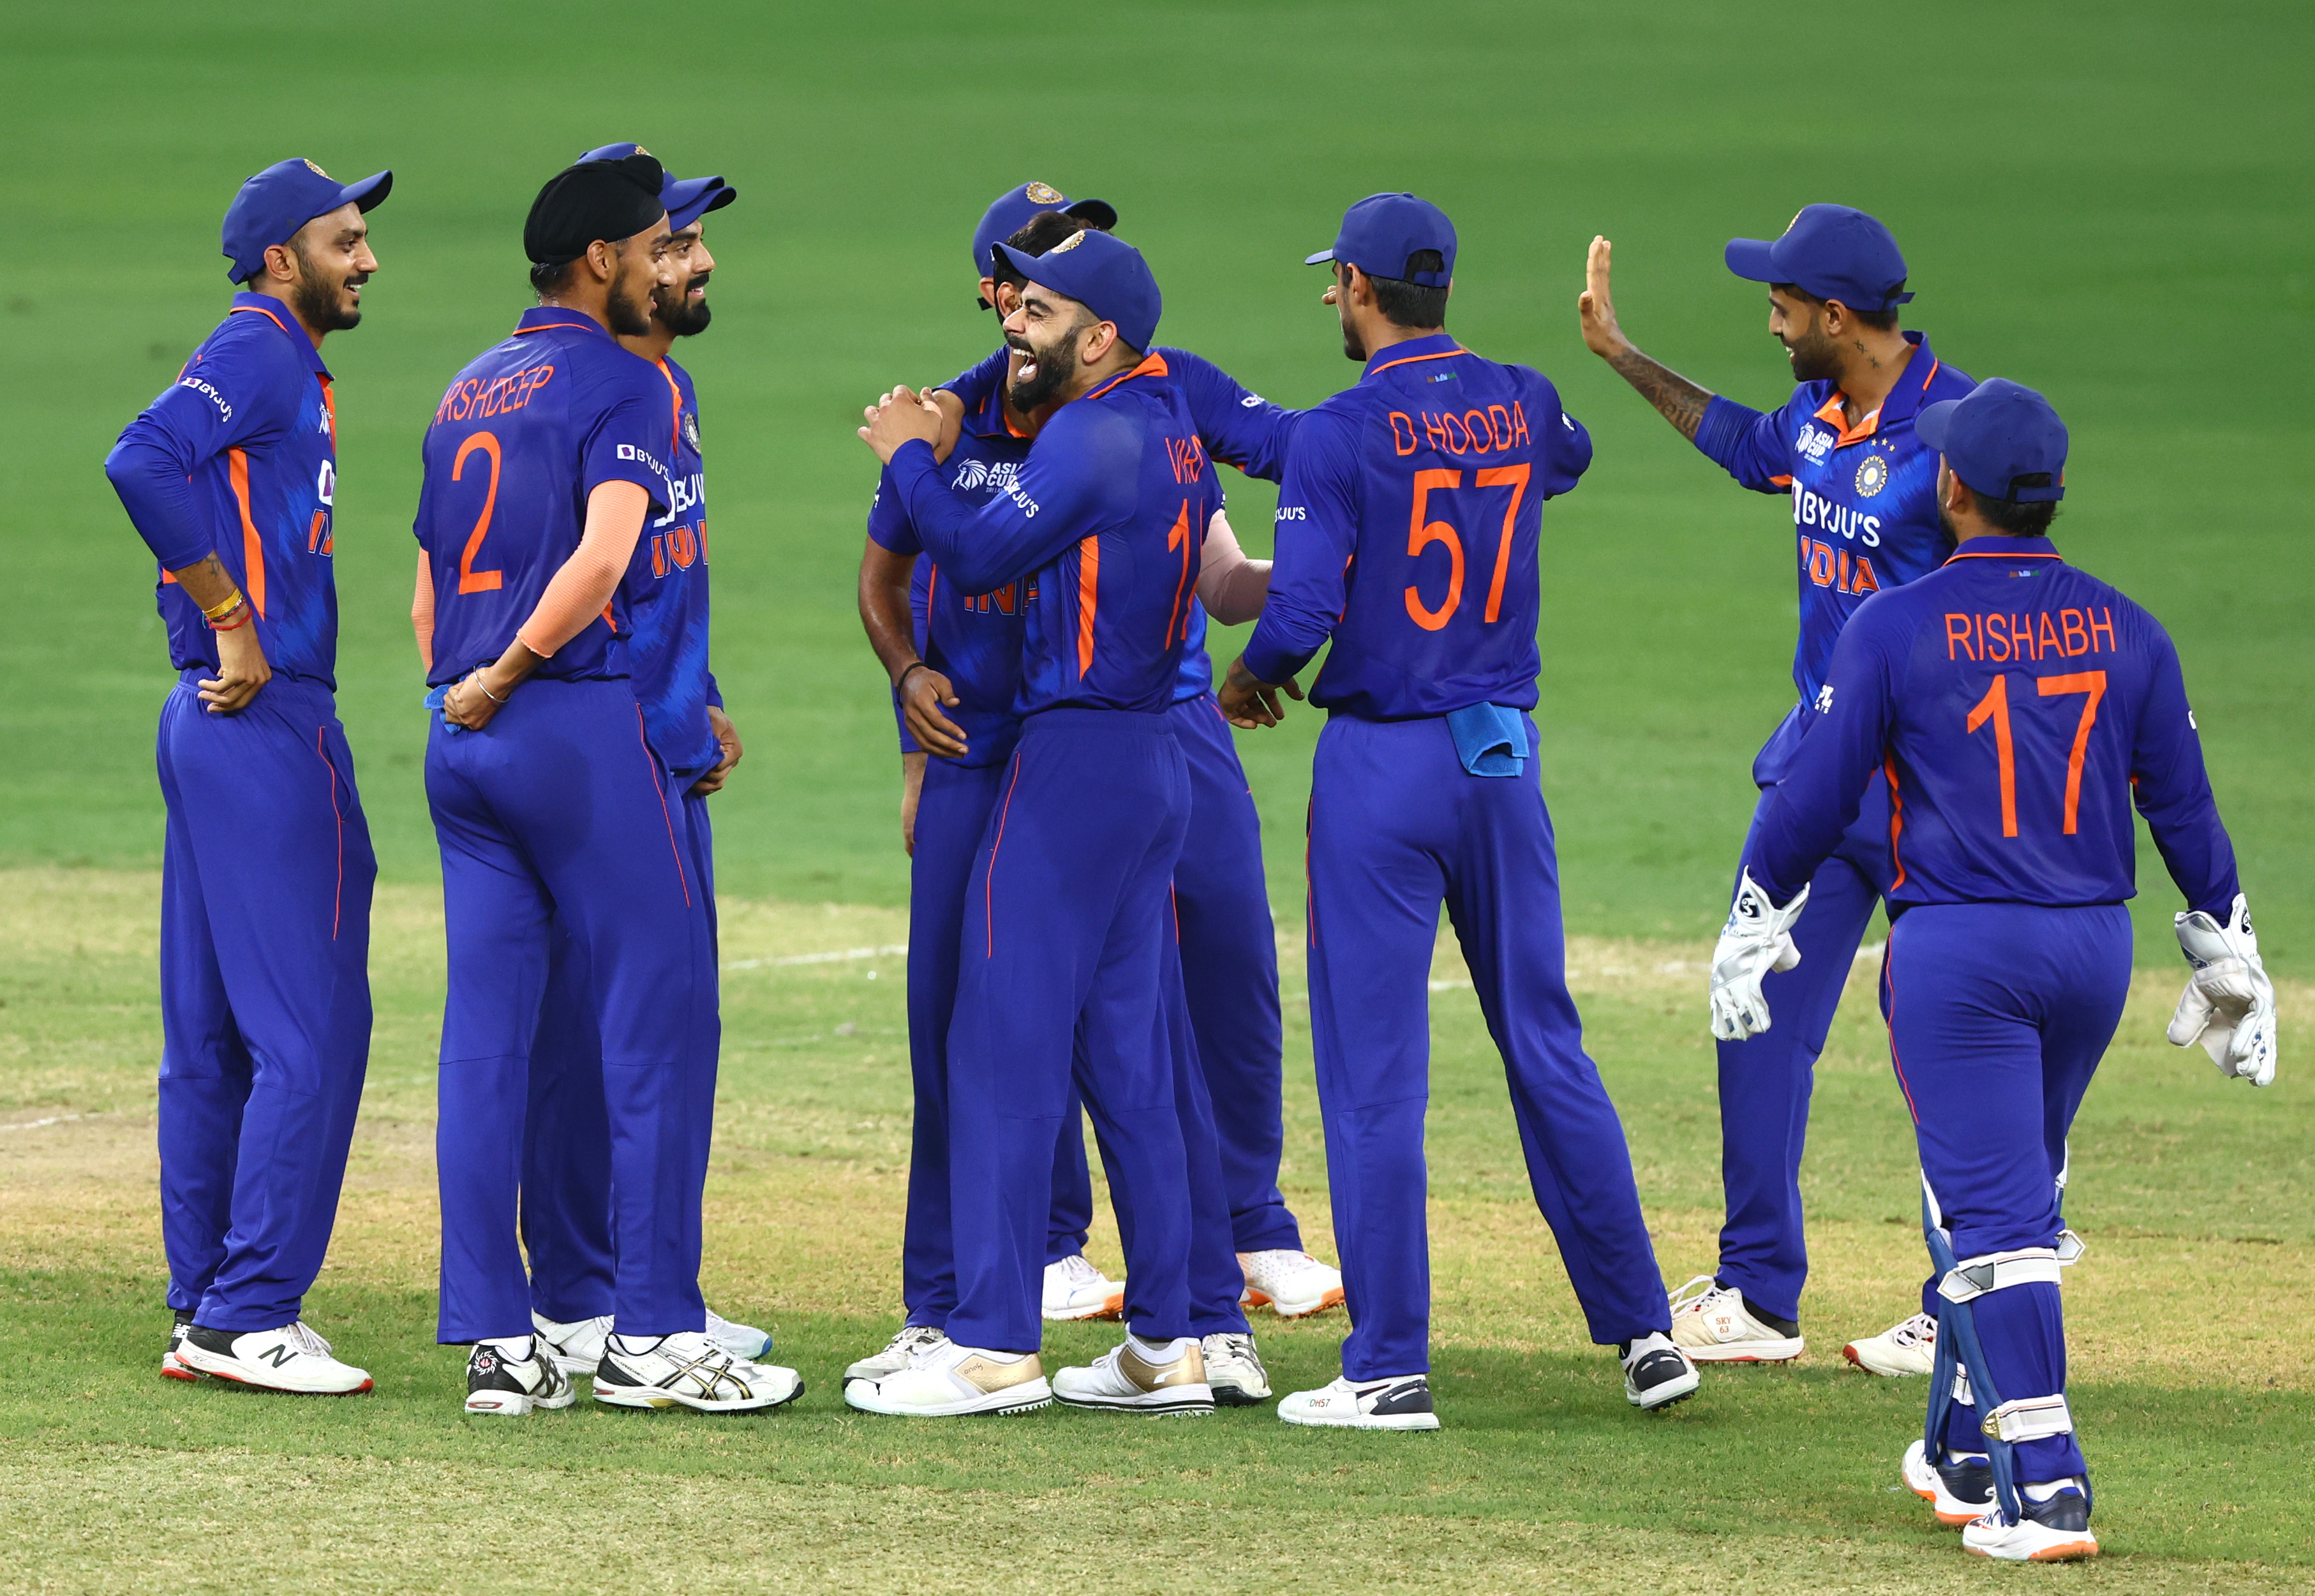 IND vs BAN ODI: Bangladesh Director of Cricket Akram Khan takes a dig at Indian team, ‘Rohit Sharma’s team has big names but Bangladesh are favorites’: Follow India vs Bangladesh LIVE